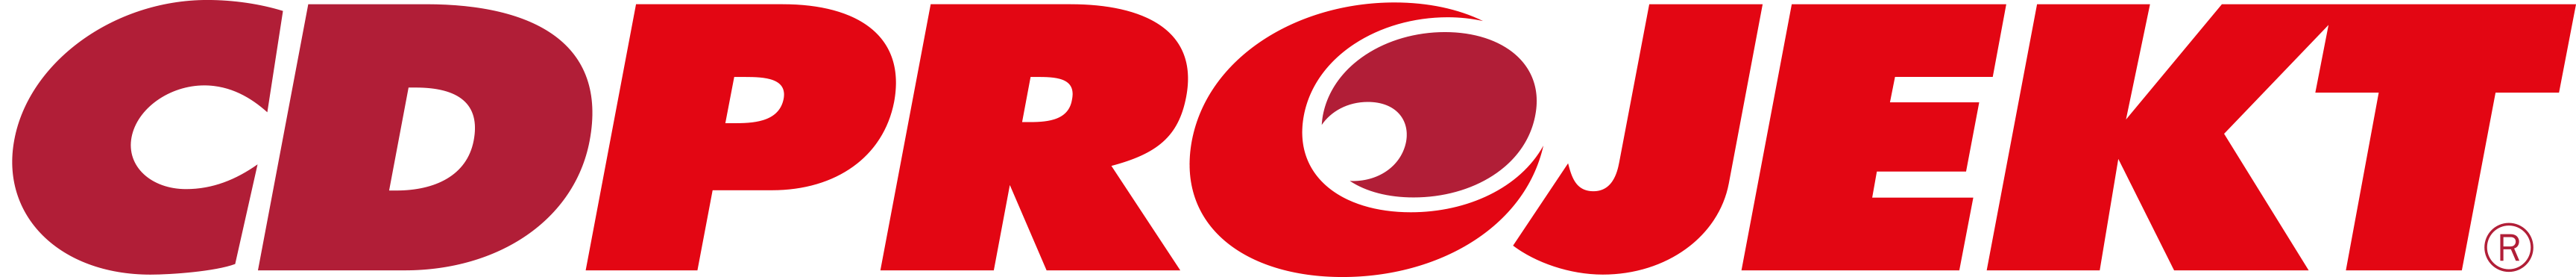 CD PROJEKT logo